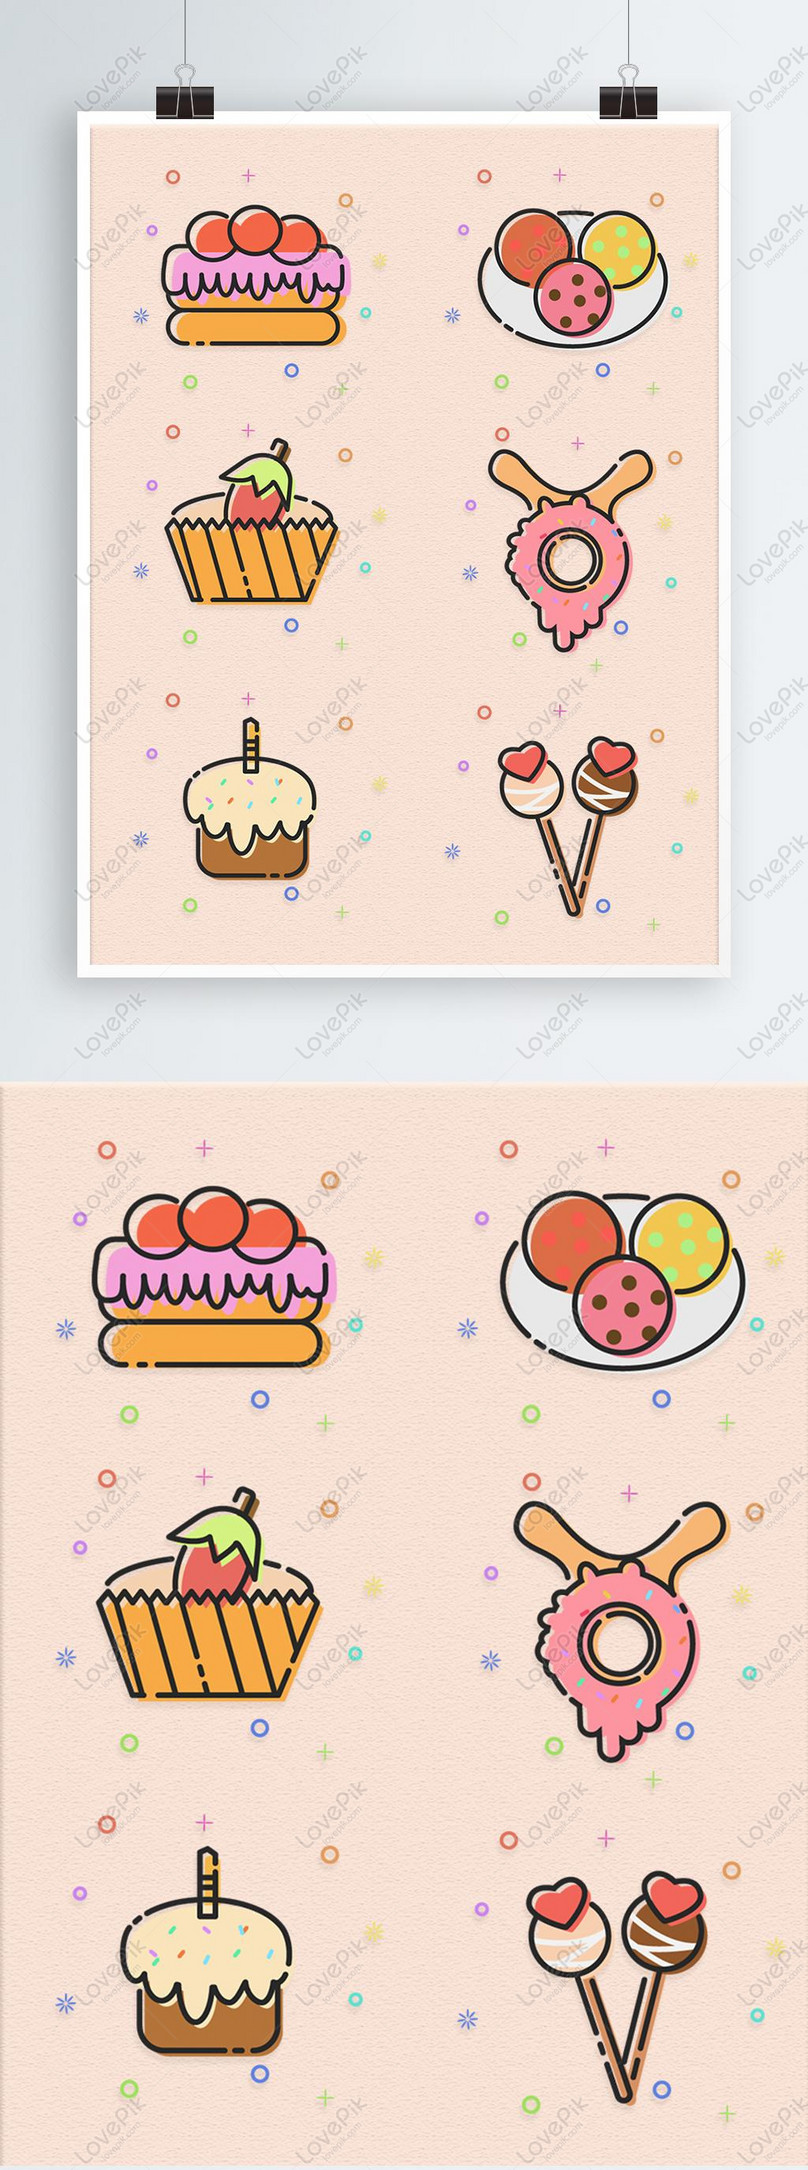 Meb Gourmet (đồ ăn tráng miệng) icon sẽ khiến bạn muốn ăn một đống đồ! Những hình ảnh đầy màu sắc và thiết kế tuyệt vời sẽ khiến bạn cảm thấy đói. Bấm vào để xem ngay và tận hưởng chiếc bánh ngọt ngào!